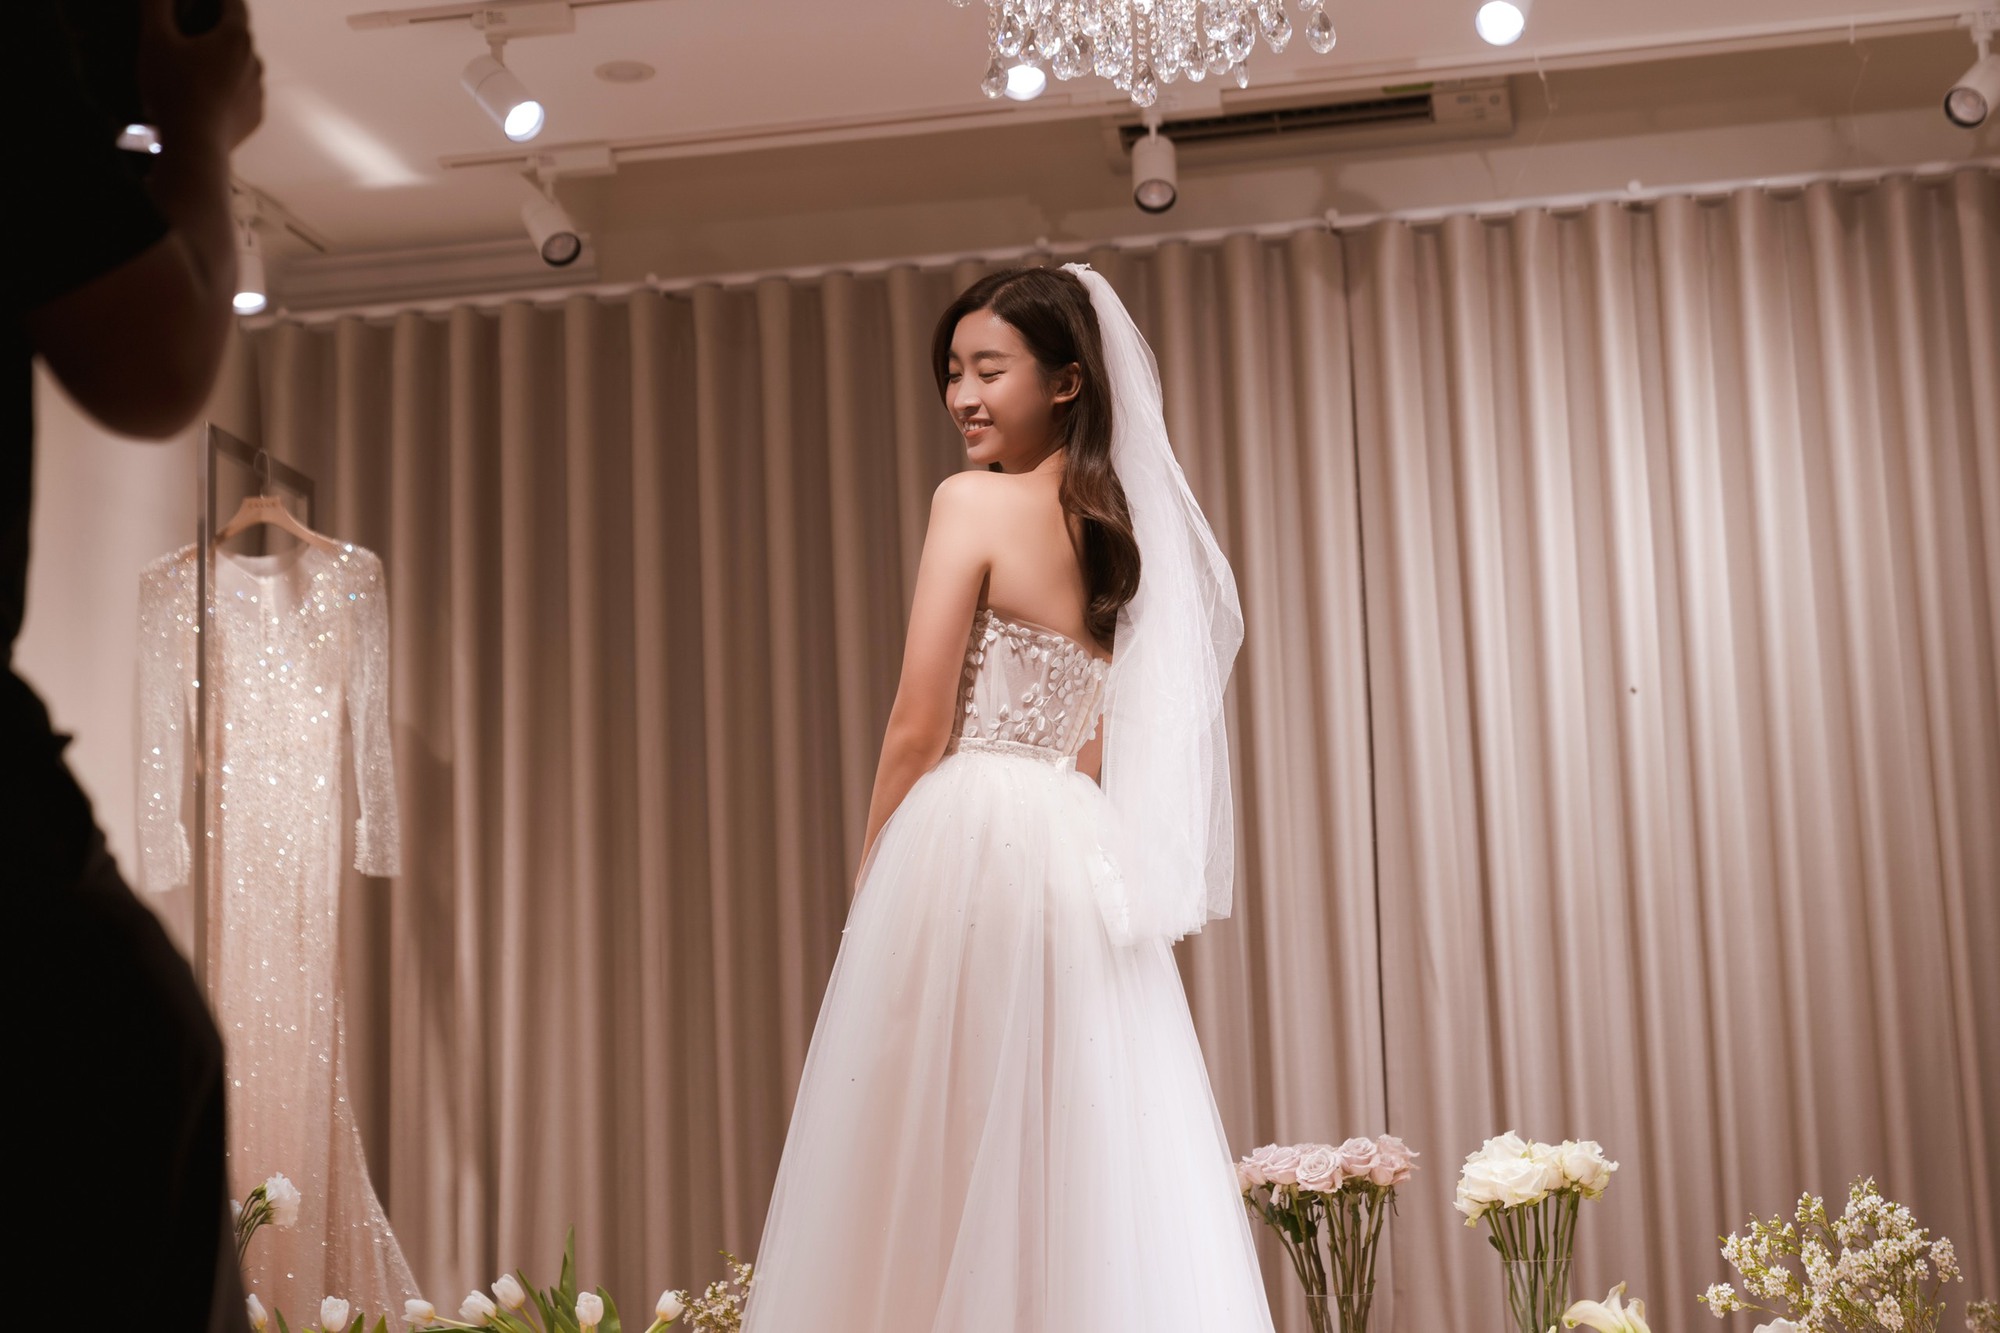 Hoa hậu Đỗ Mỹ Linh trở thành biểu tượng cô dâu thời đại mới với những tuyệt tác váy cưới từ NTK Phương Linh - Ảnh 8.